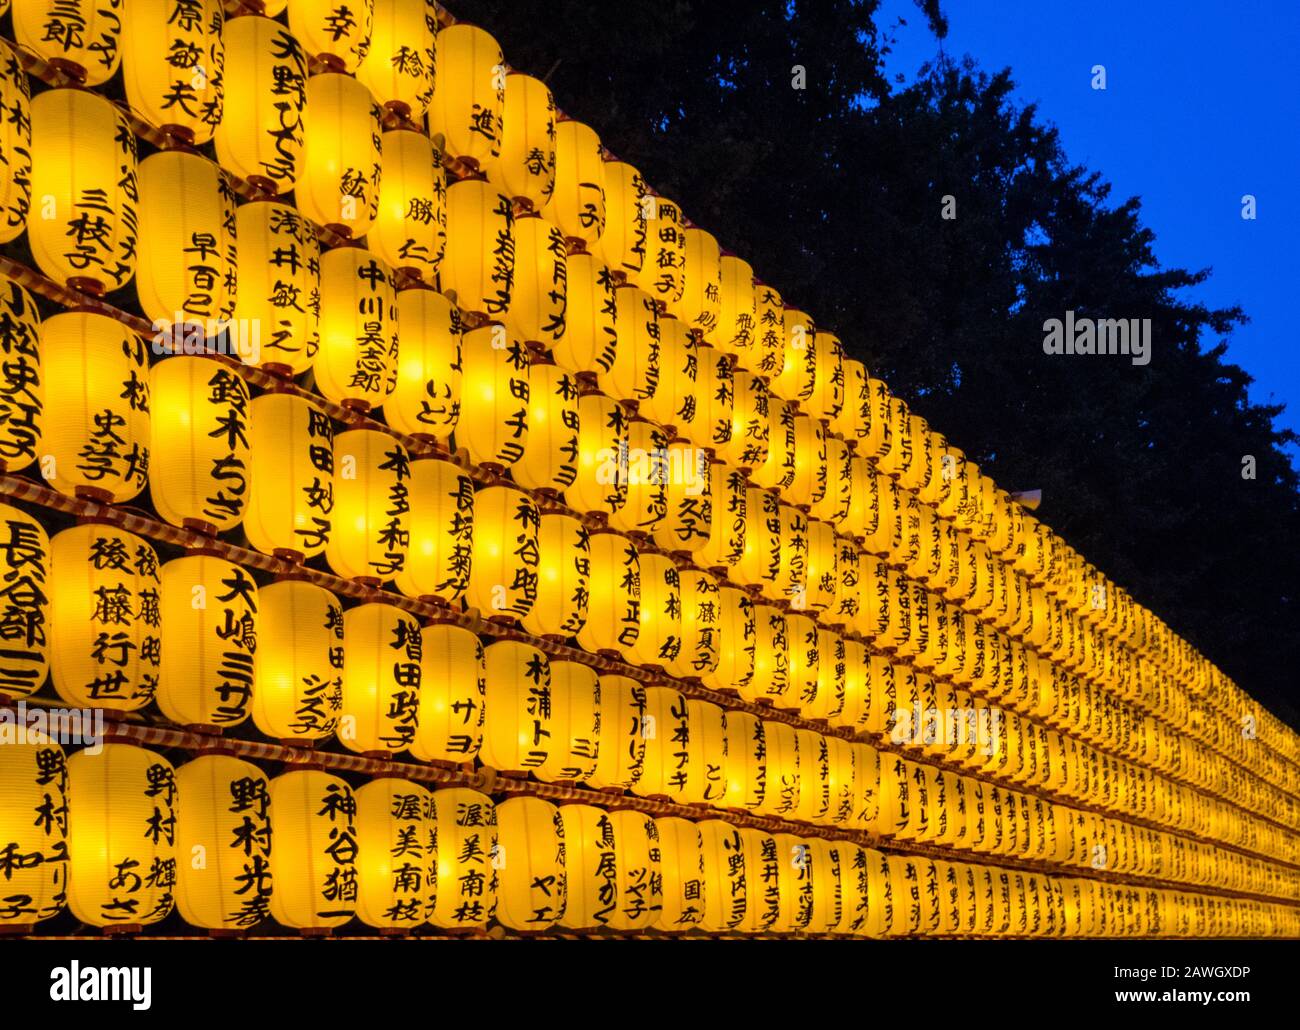 Lanterne Festival Mitama Matsuri Tokyo Giappone Immagini E Fotos Stock Alamy